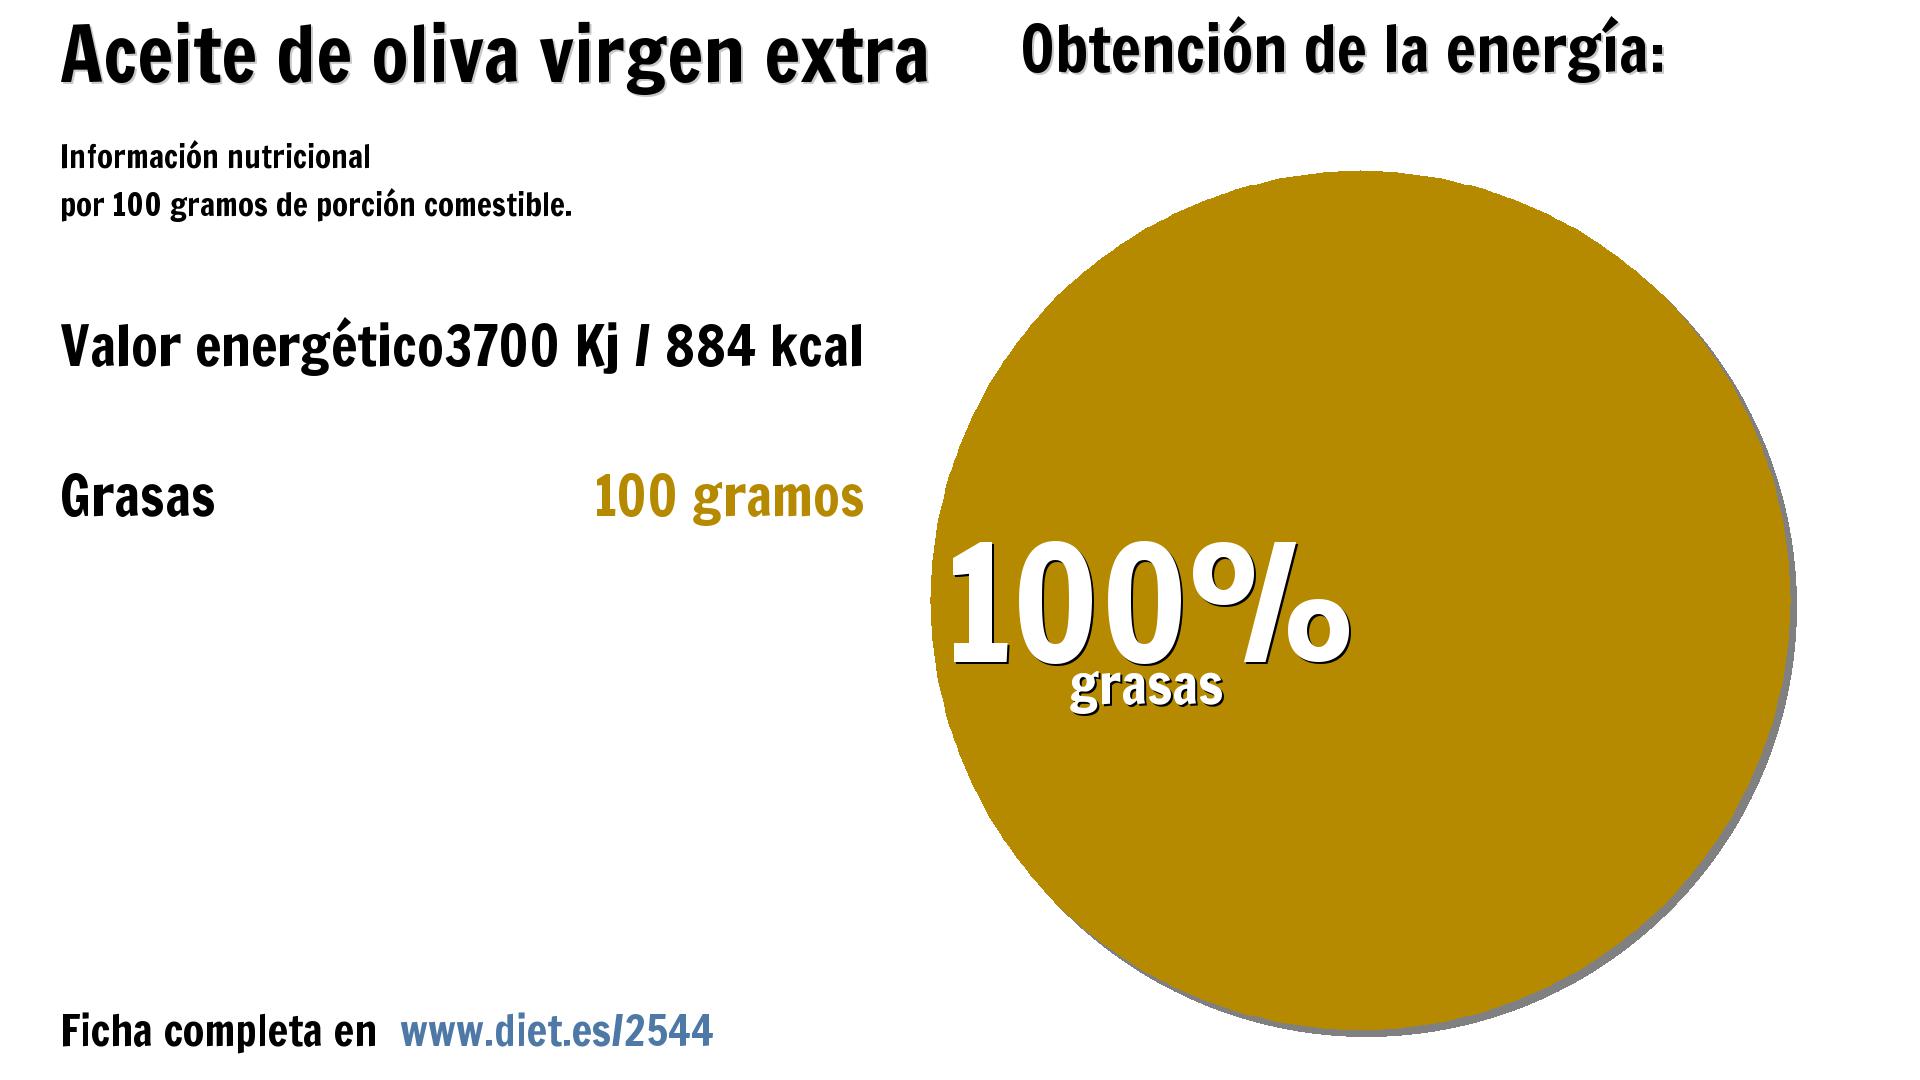 Aceite de oliva virgen extra: energía 3700 Kj y grasas 100 g.